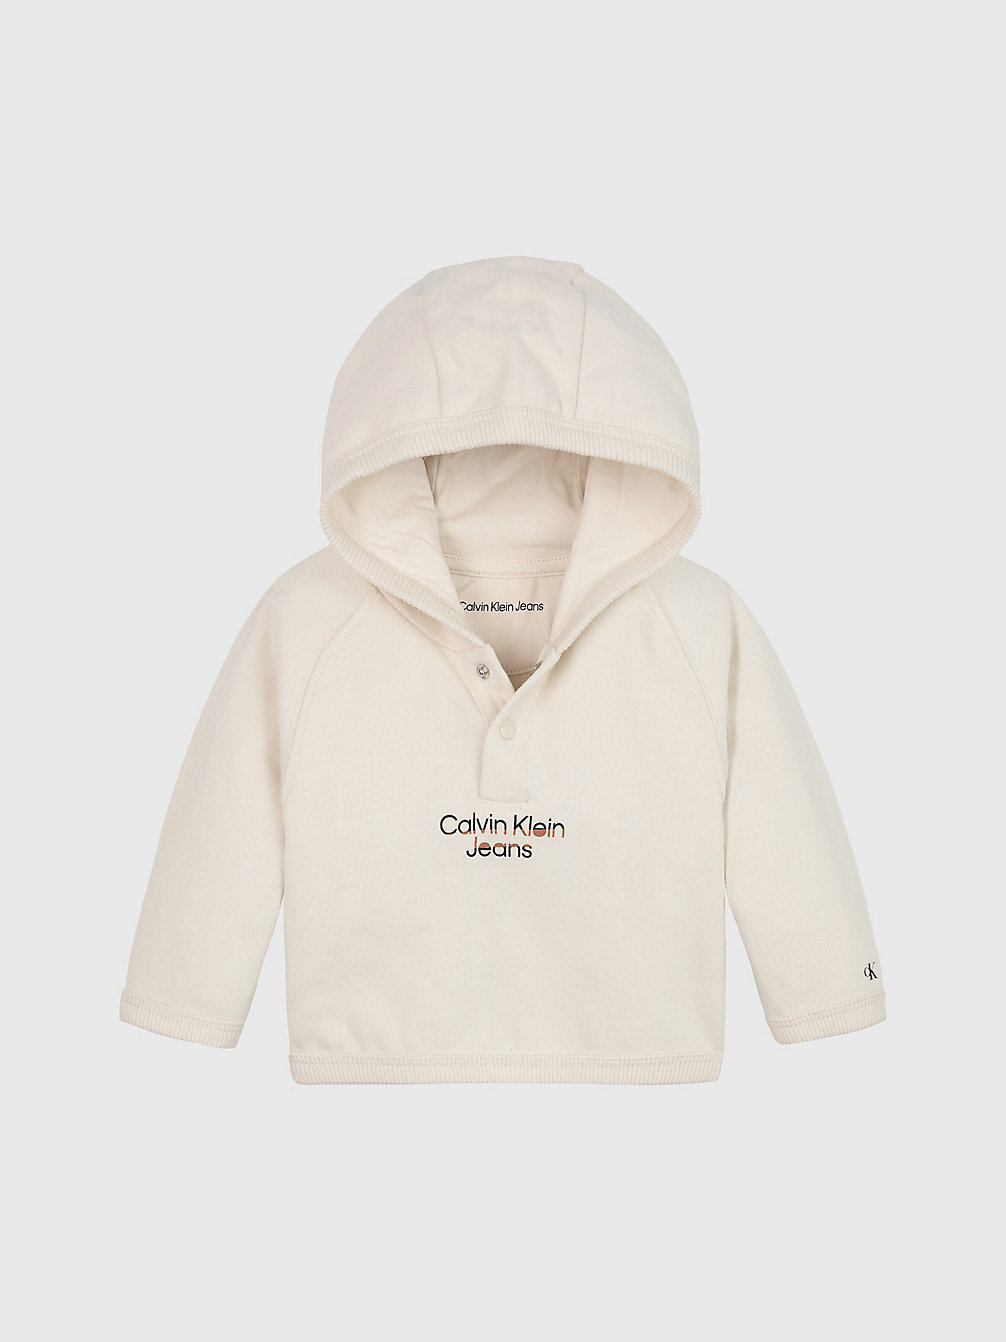 Sweat À Capuche En Polaire Avec Logo Pour Nouveau-Né > WHITECAP GRAY > undefined newborn > Calvin Klein